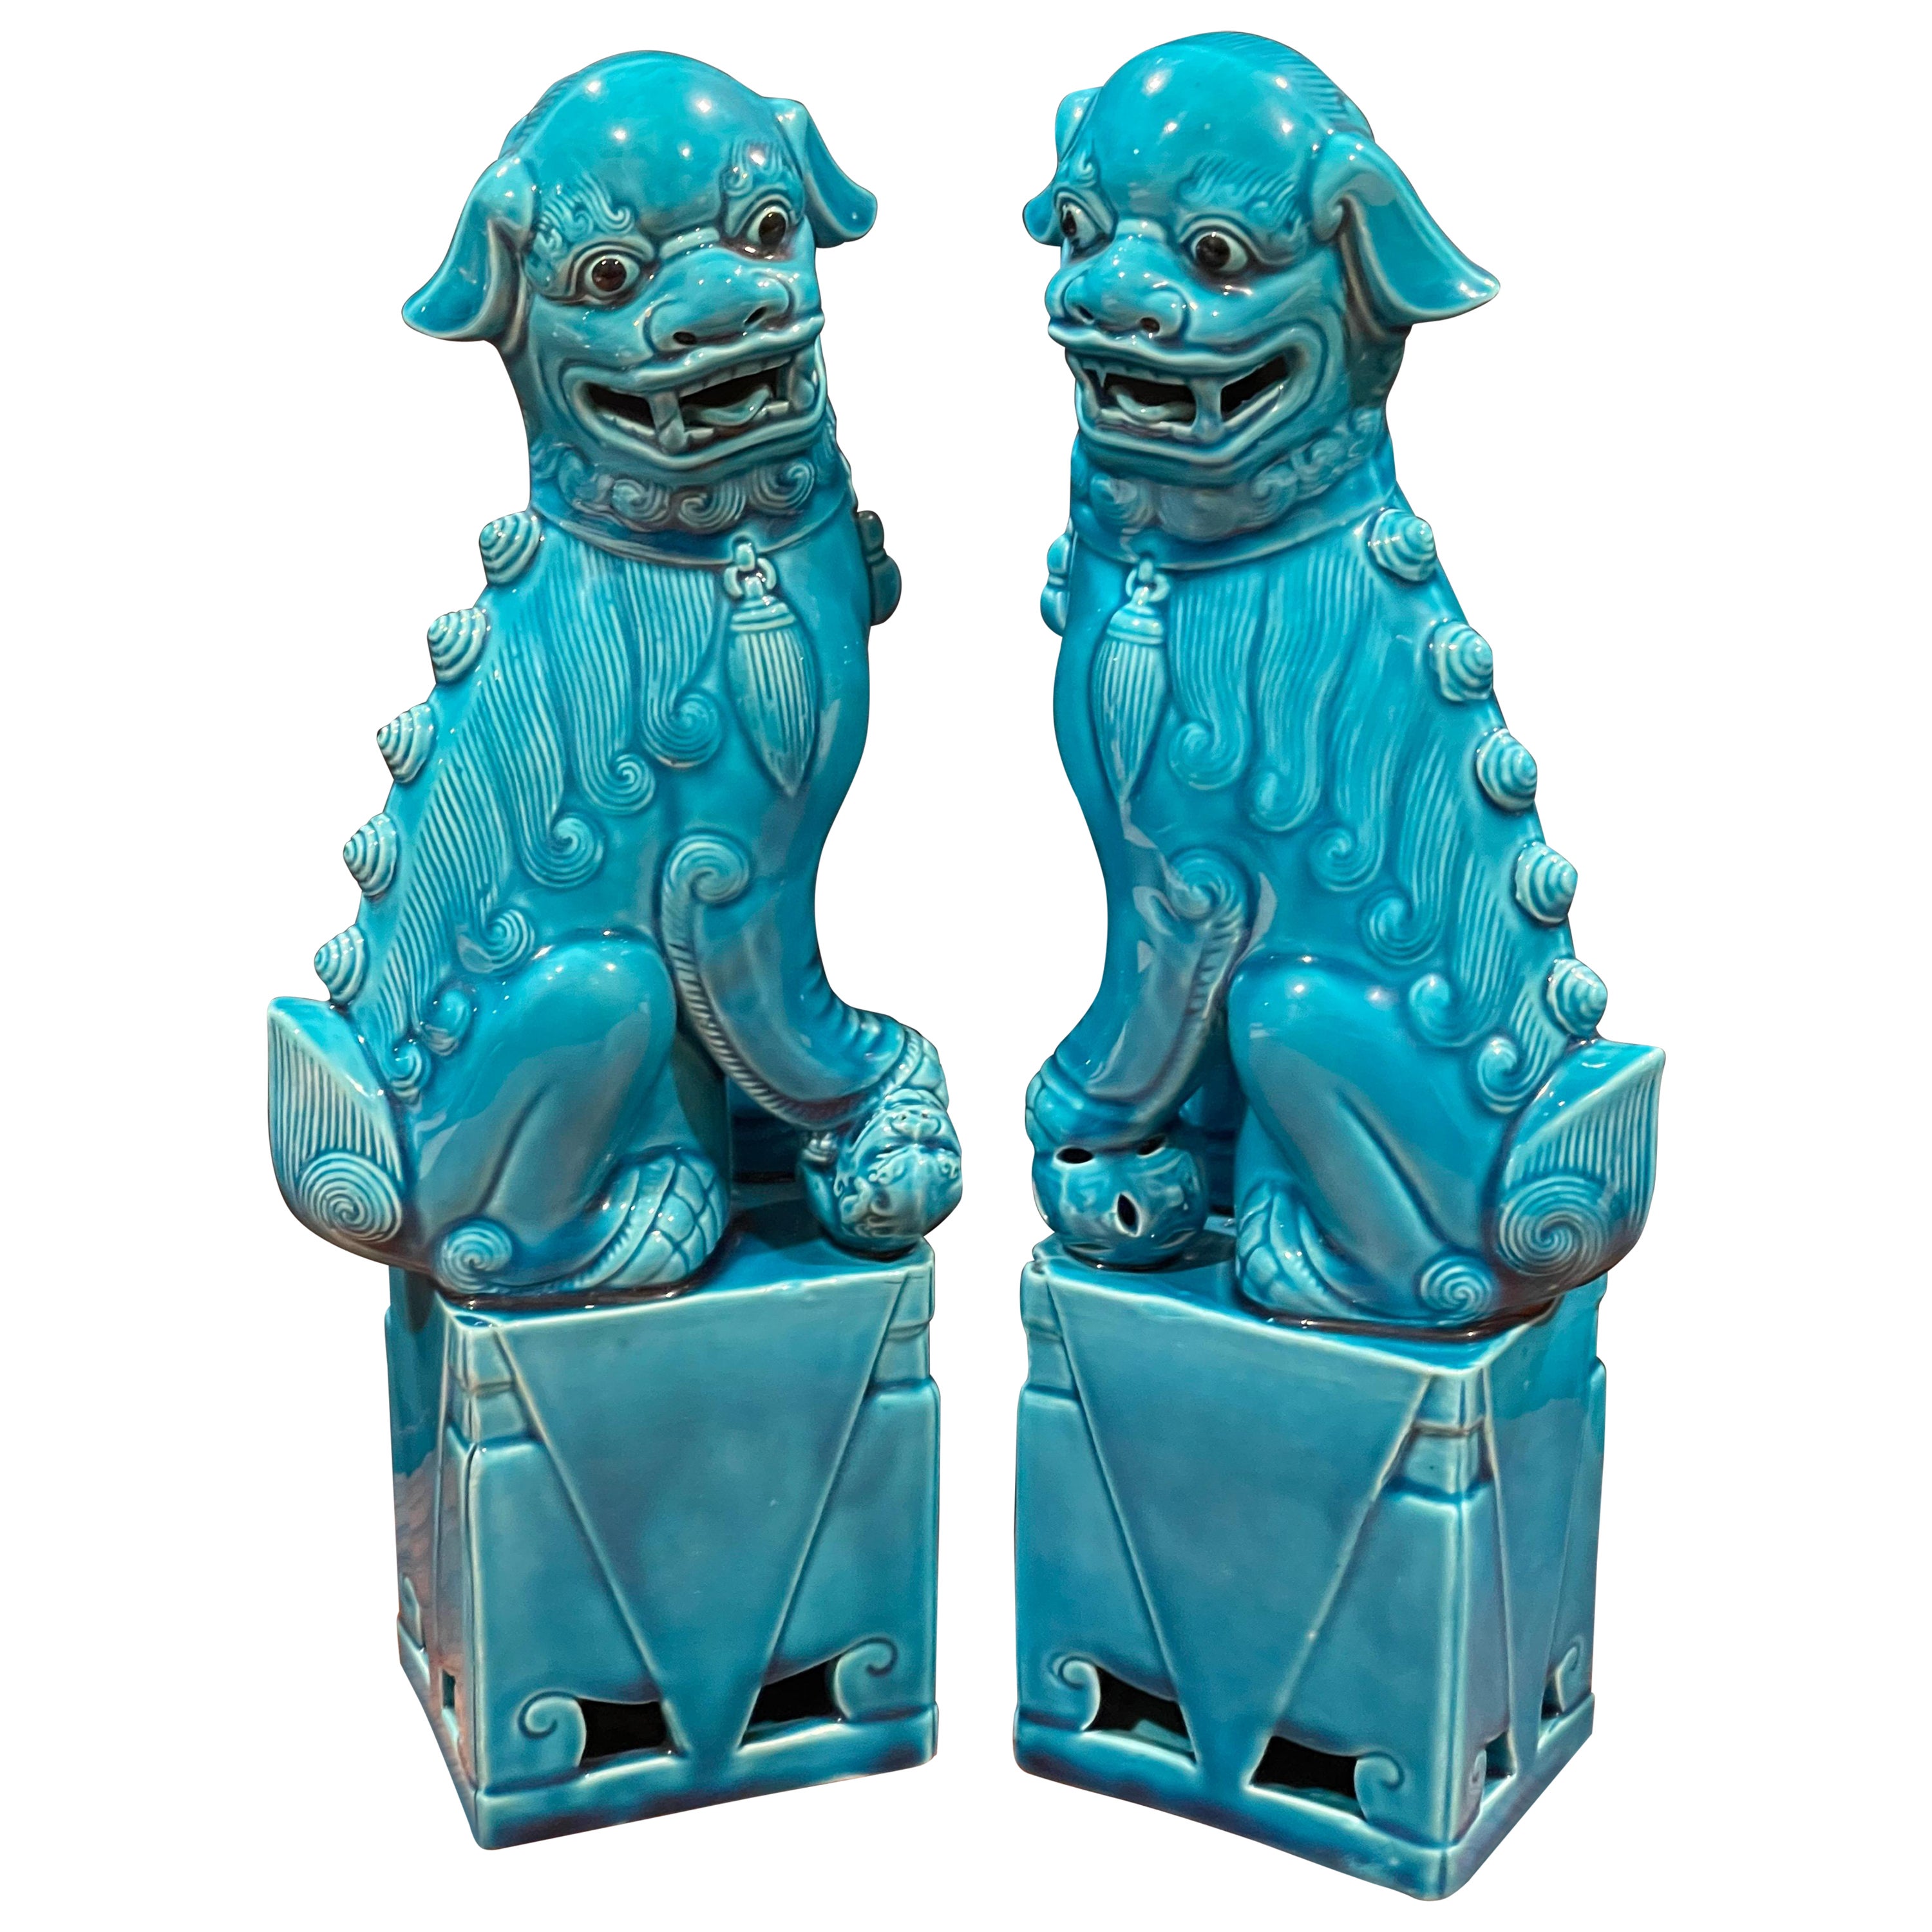 Pair of Midcentury Turquoise Blue Ceramic Foo Dog Sculptures